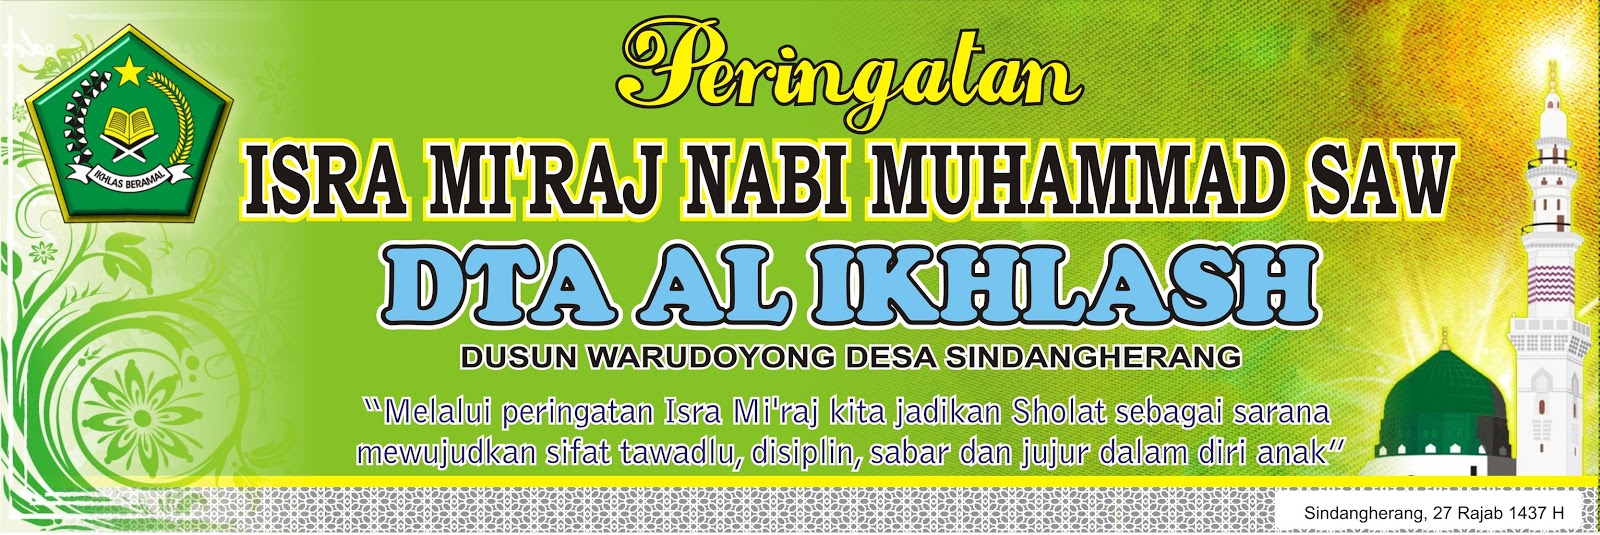 Download Kumpulan Contoh Spanduk  Isra  Mi raj  cdr  KARYAKU